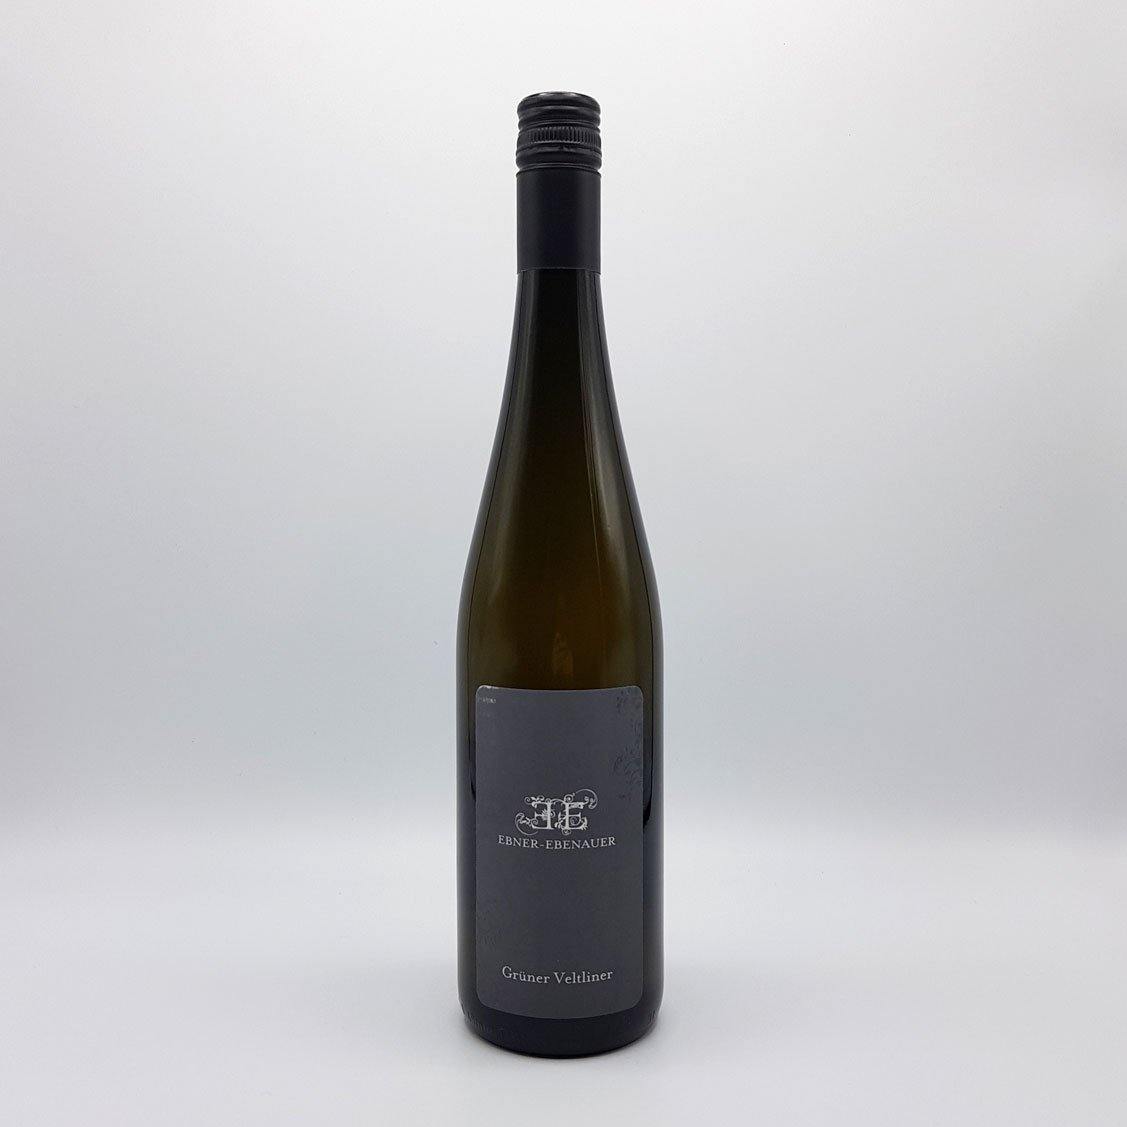 Ebner-Ebenauer, Grüner Veltliner, 2018 - Social Wine